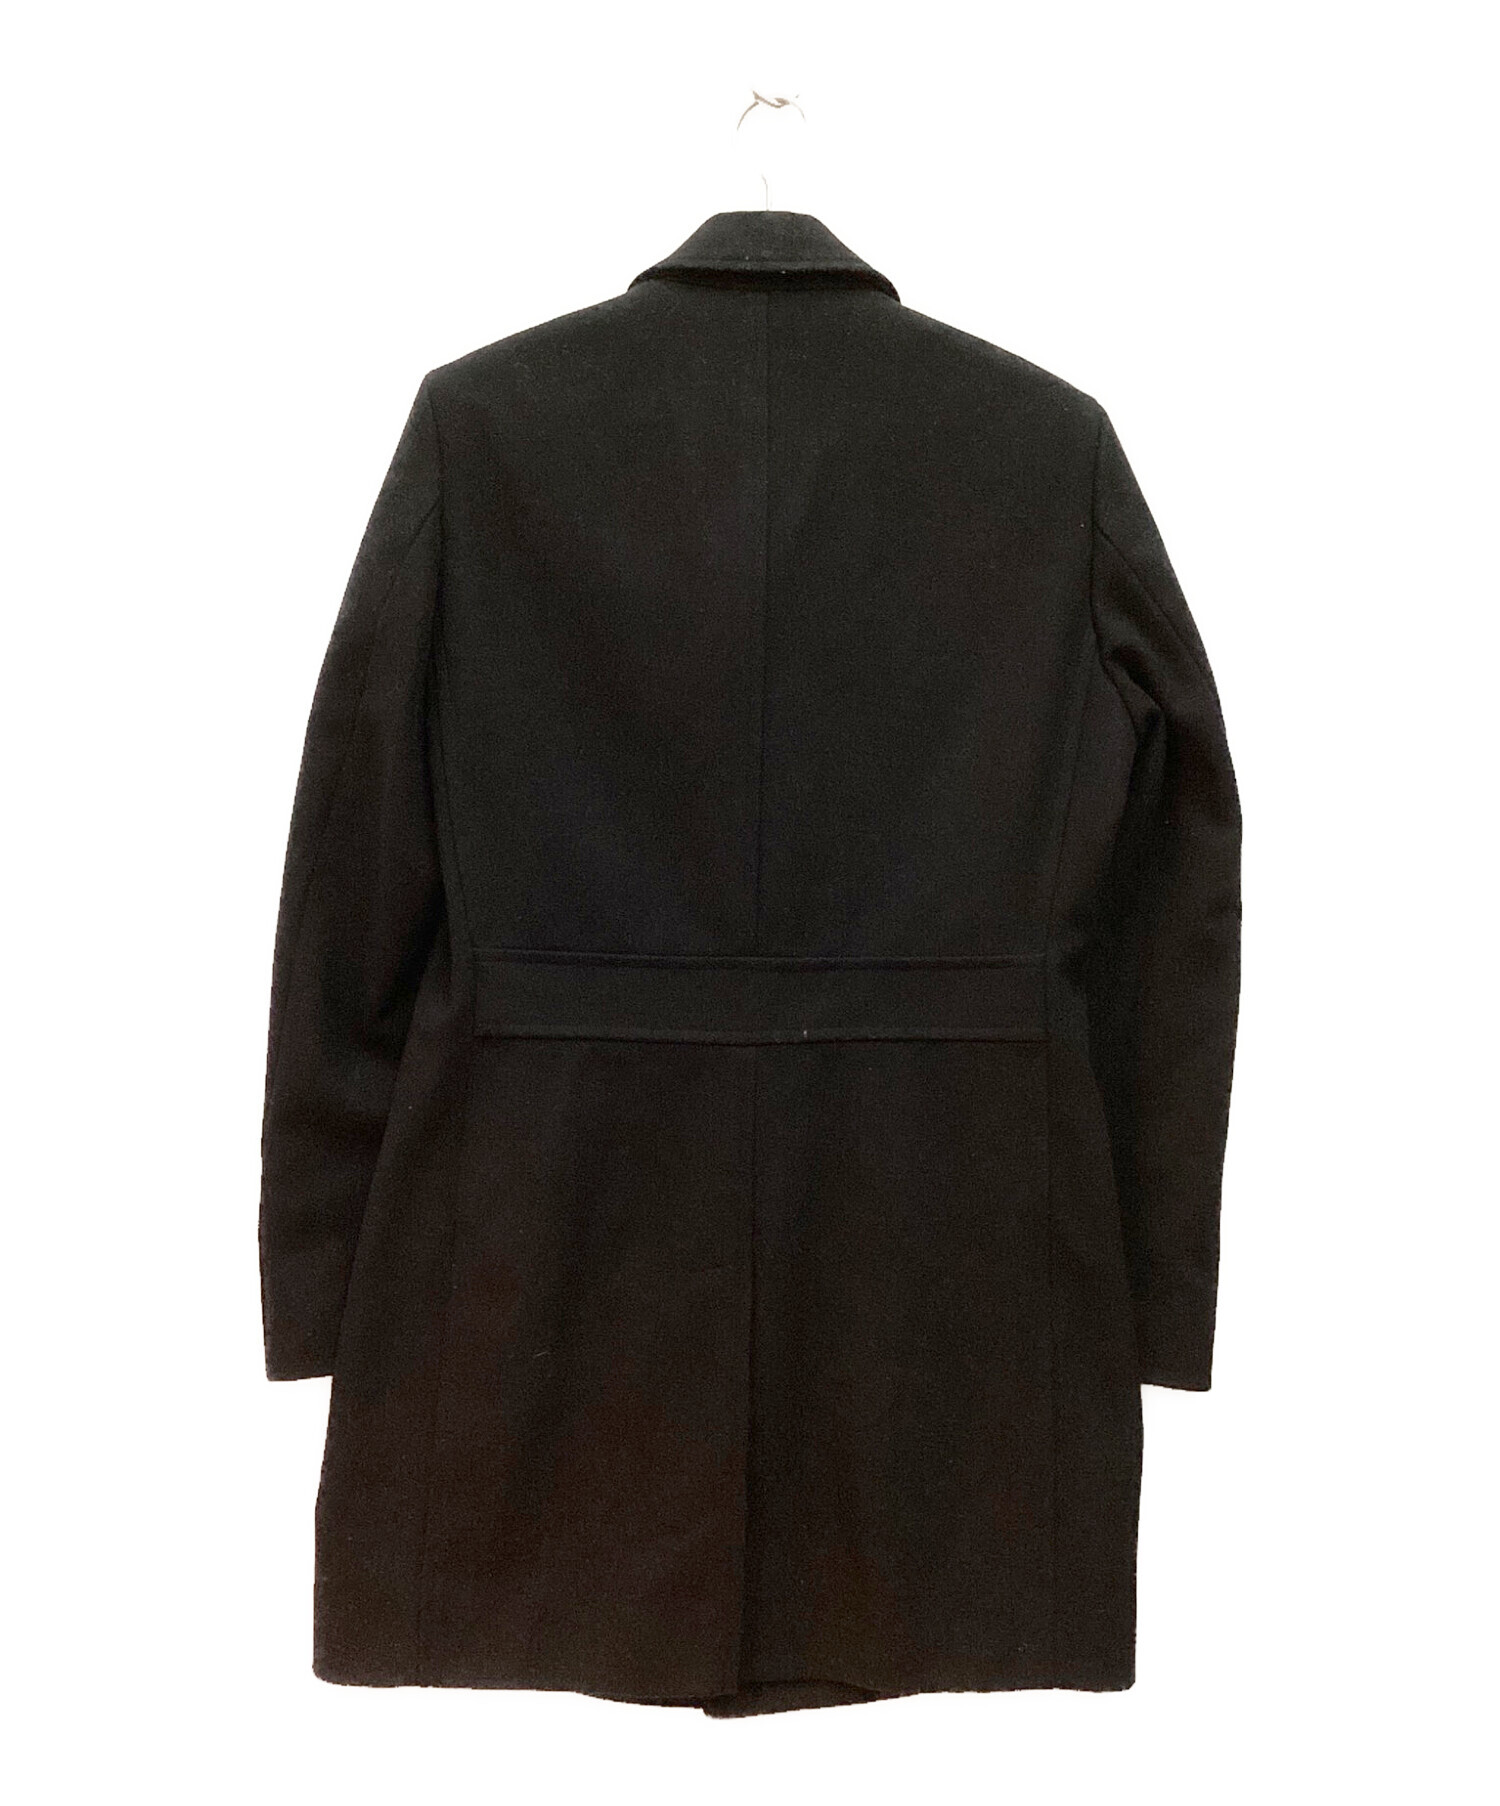 HUGO BOSS (ヒューゴ ボス) ウールステンカラーコート ブラック サイズ:M